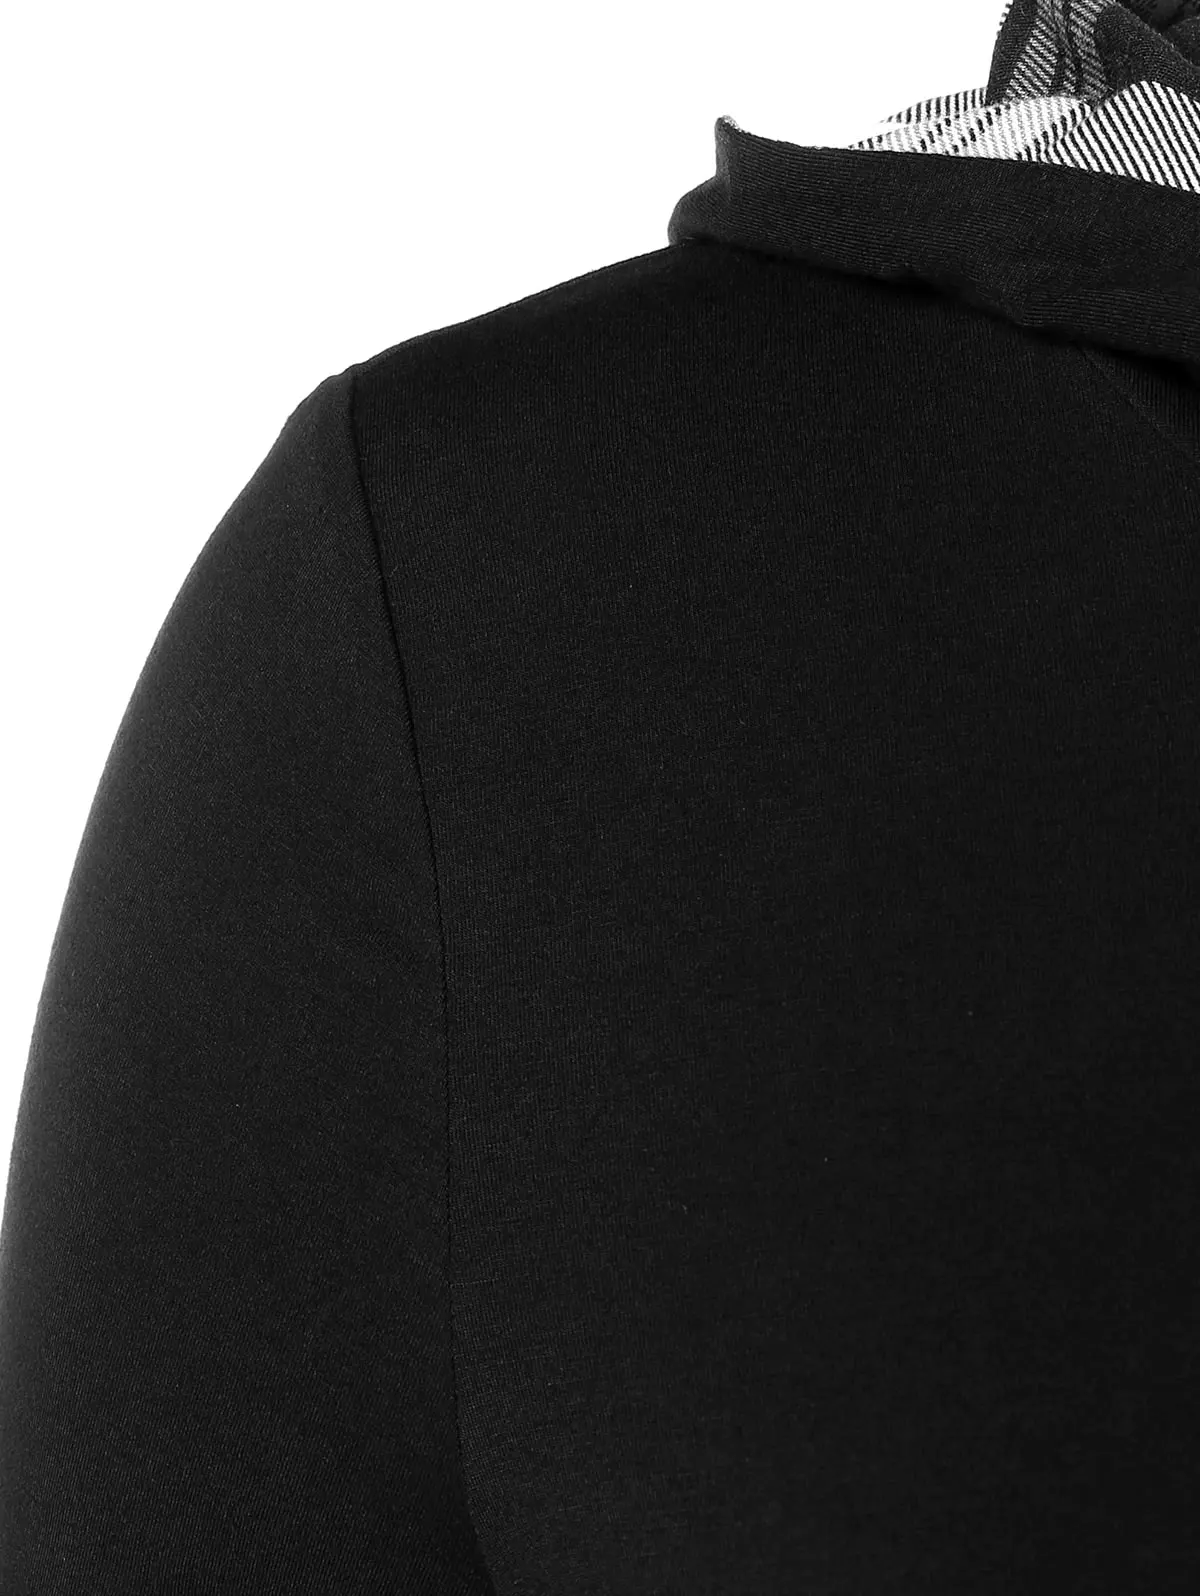 Wipalo размера плюс 5XL плед панель с капюшоном Толстовка Женская Повседневная с длинным рукавом Лоскутная Толстовка женская верхняя одежда большого размера